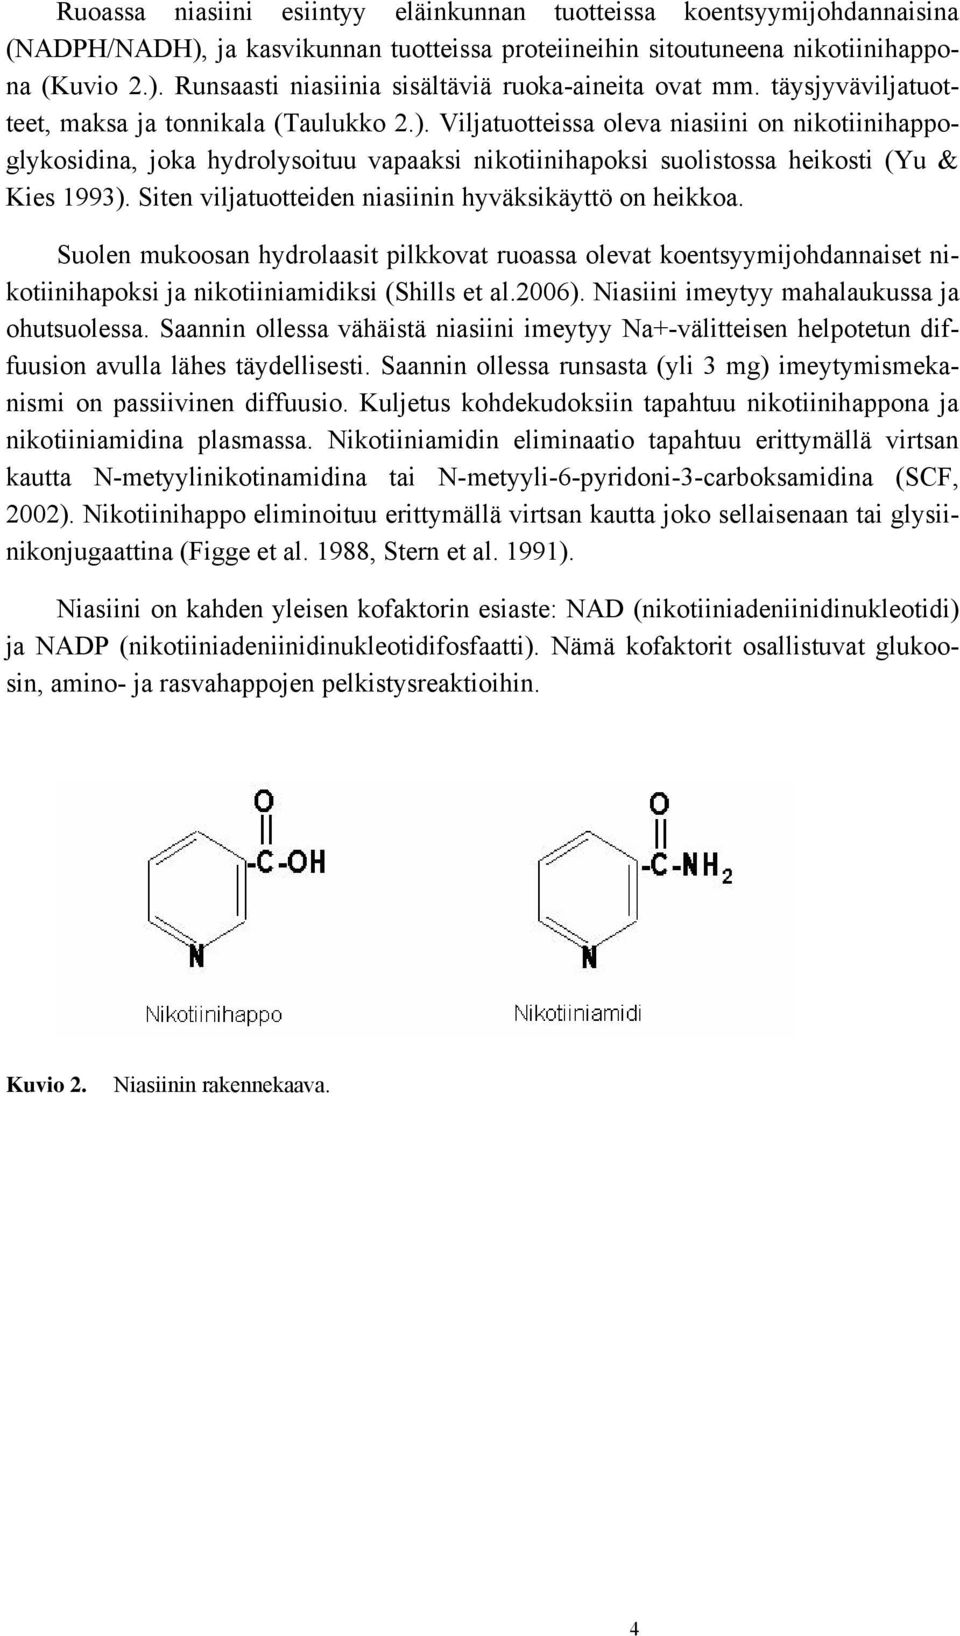 Viljatuotteissa oleva niasiini on nikotiinihappoglykosidina, joka hydrolysoituu vapaaksi nikotiinihapoksi suolistossa heikosti (Yu & Kies 1993).